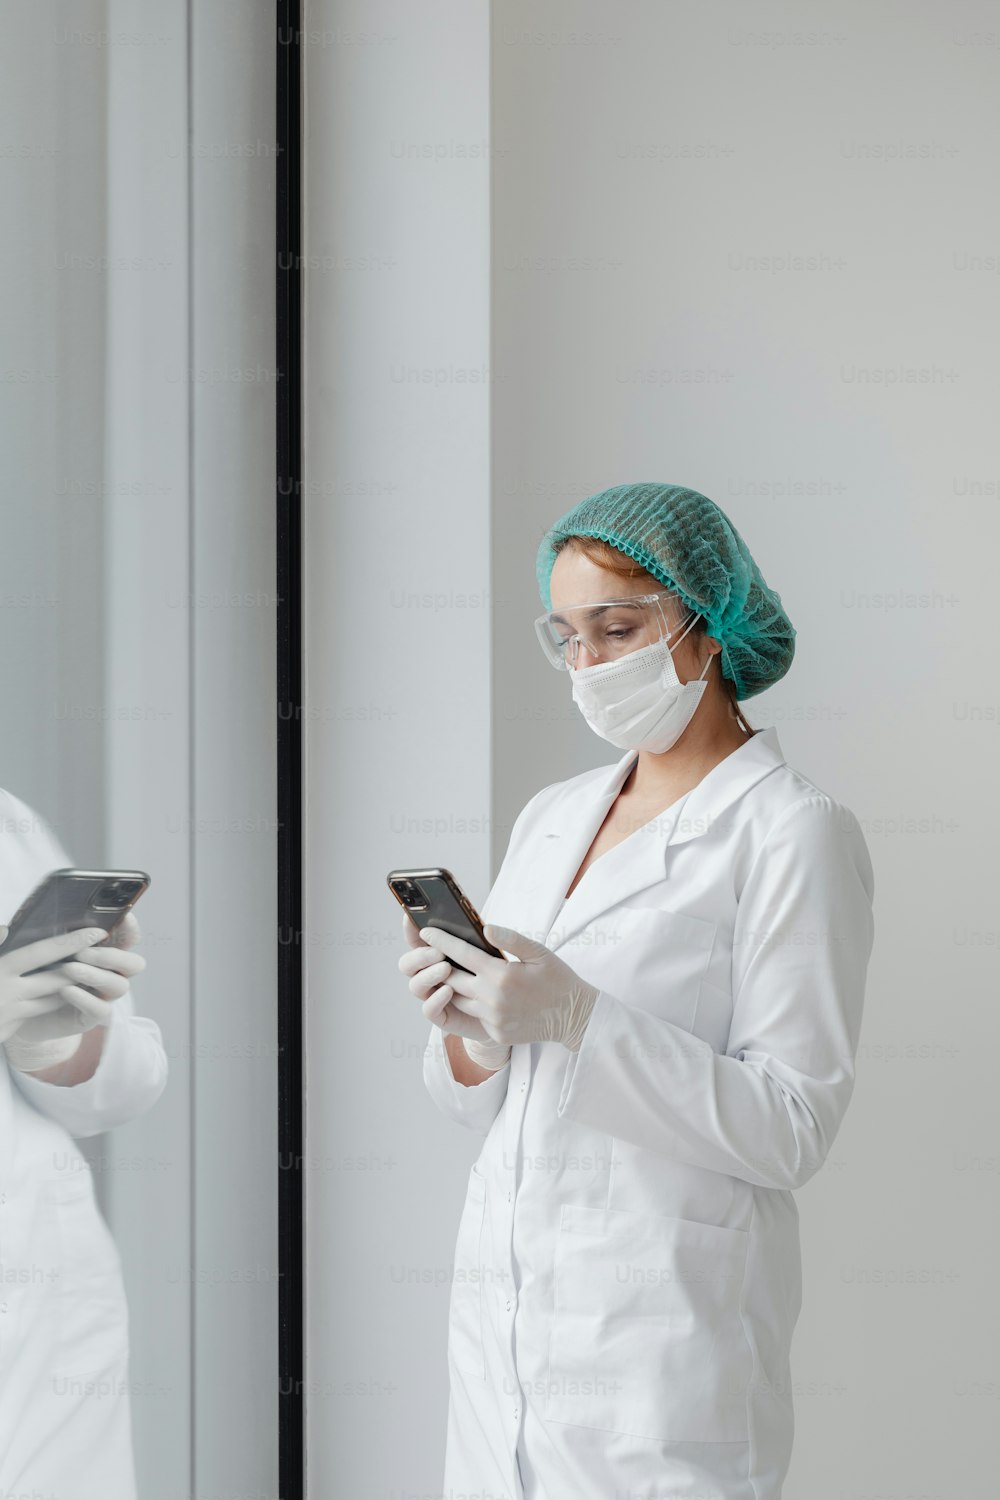 Una donna in camice bianco e maschera chirurgica che guarda un telefono cellulare